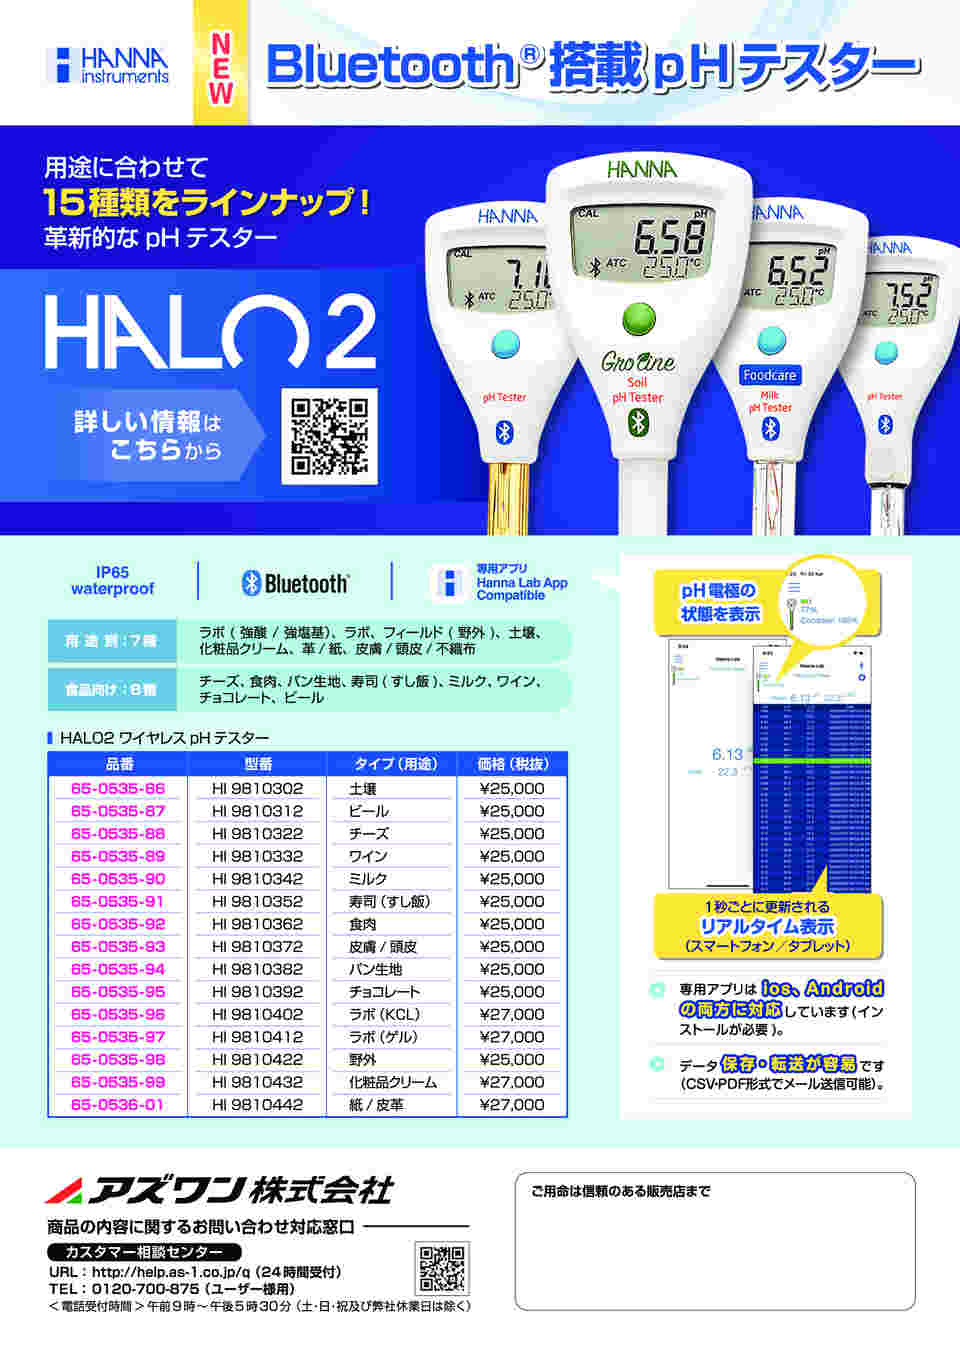 ハンナ HALO2 ワイヤレスpHテスター HI 9810352 (寿司)-